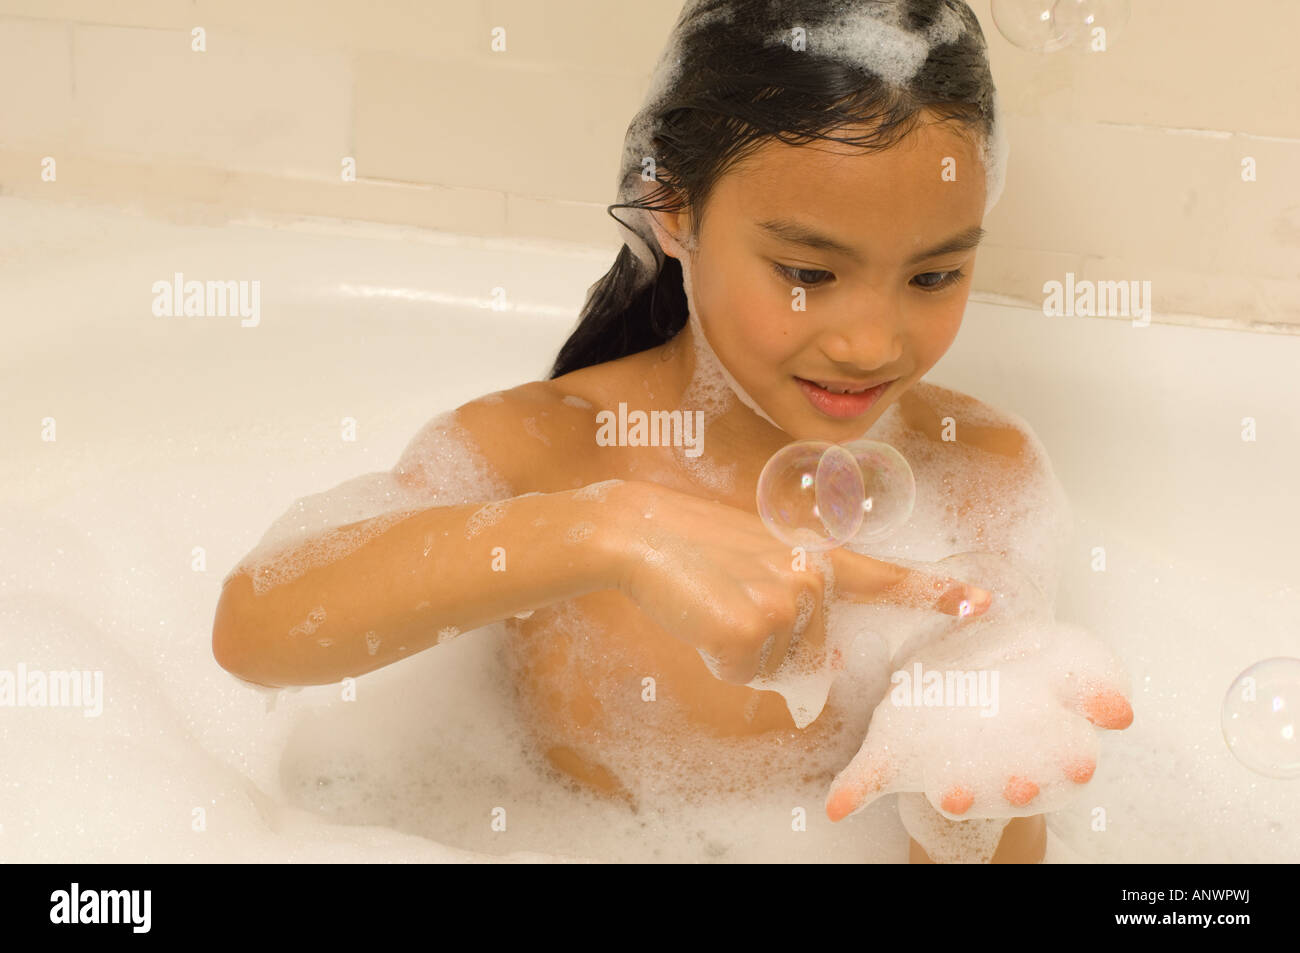 Fille de 7 ans jouant dans le bain à bulles asiatique américain Vietnamien Banque D'Images